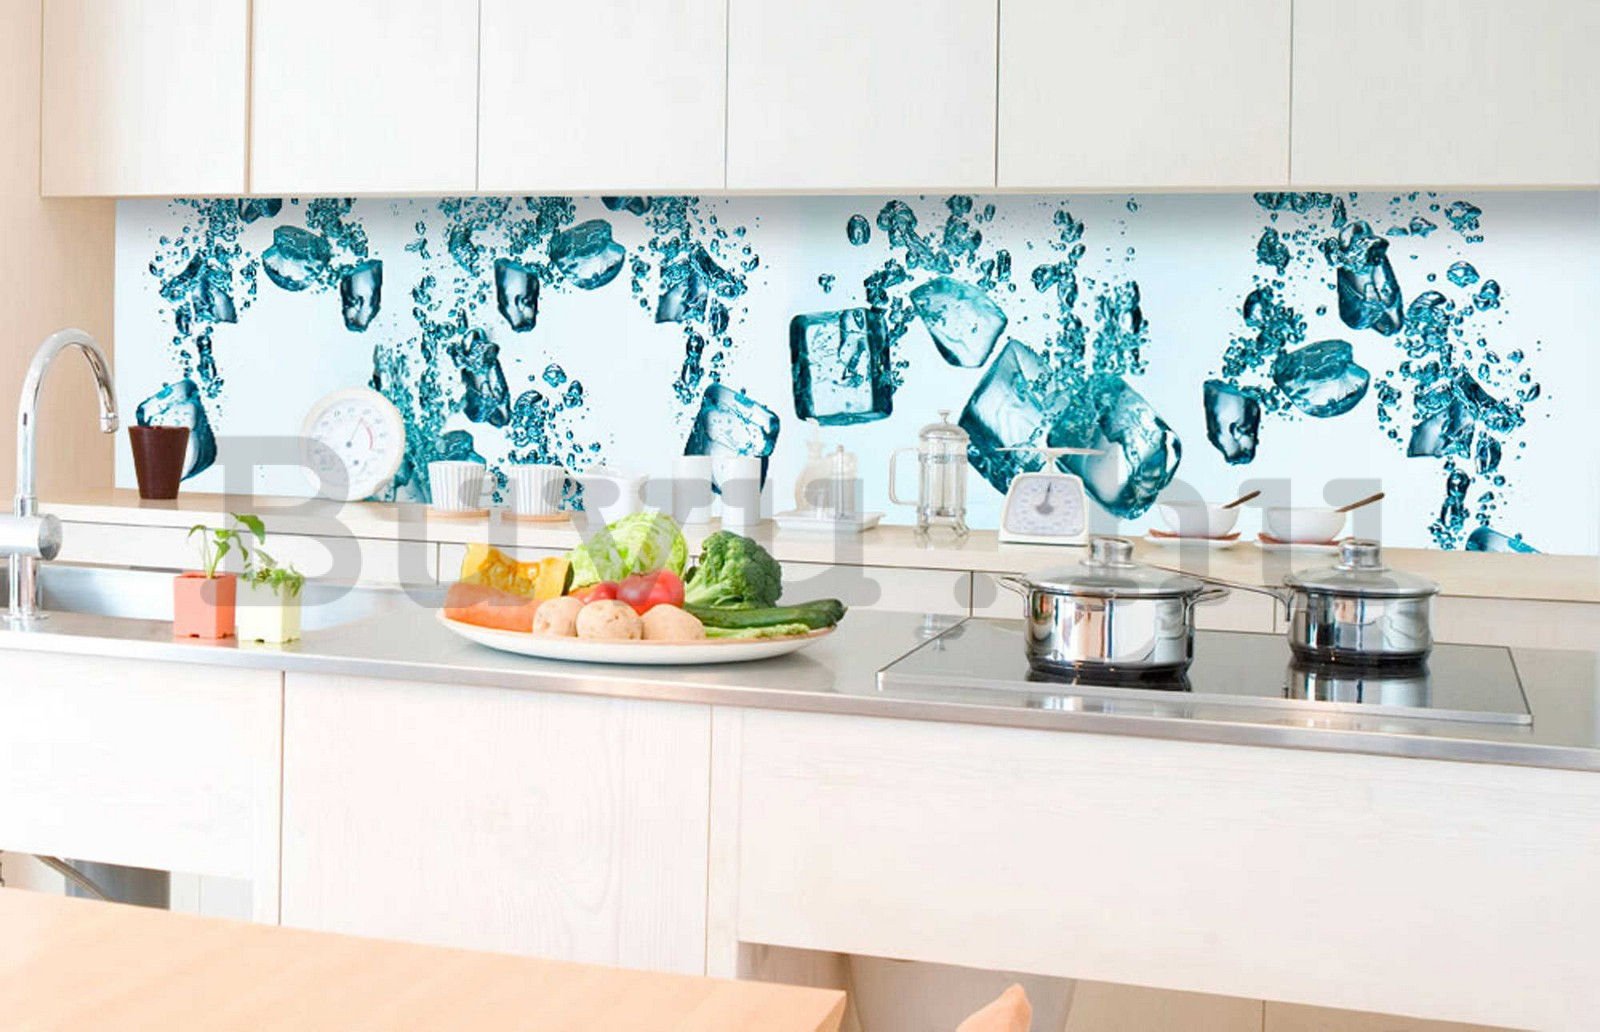 Öntapadós mosható fotófotótapéta konyhába - Jégkockák, 350x60 cm